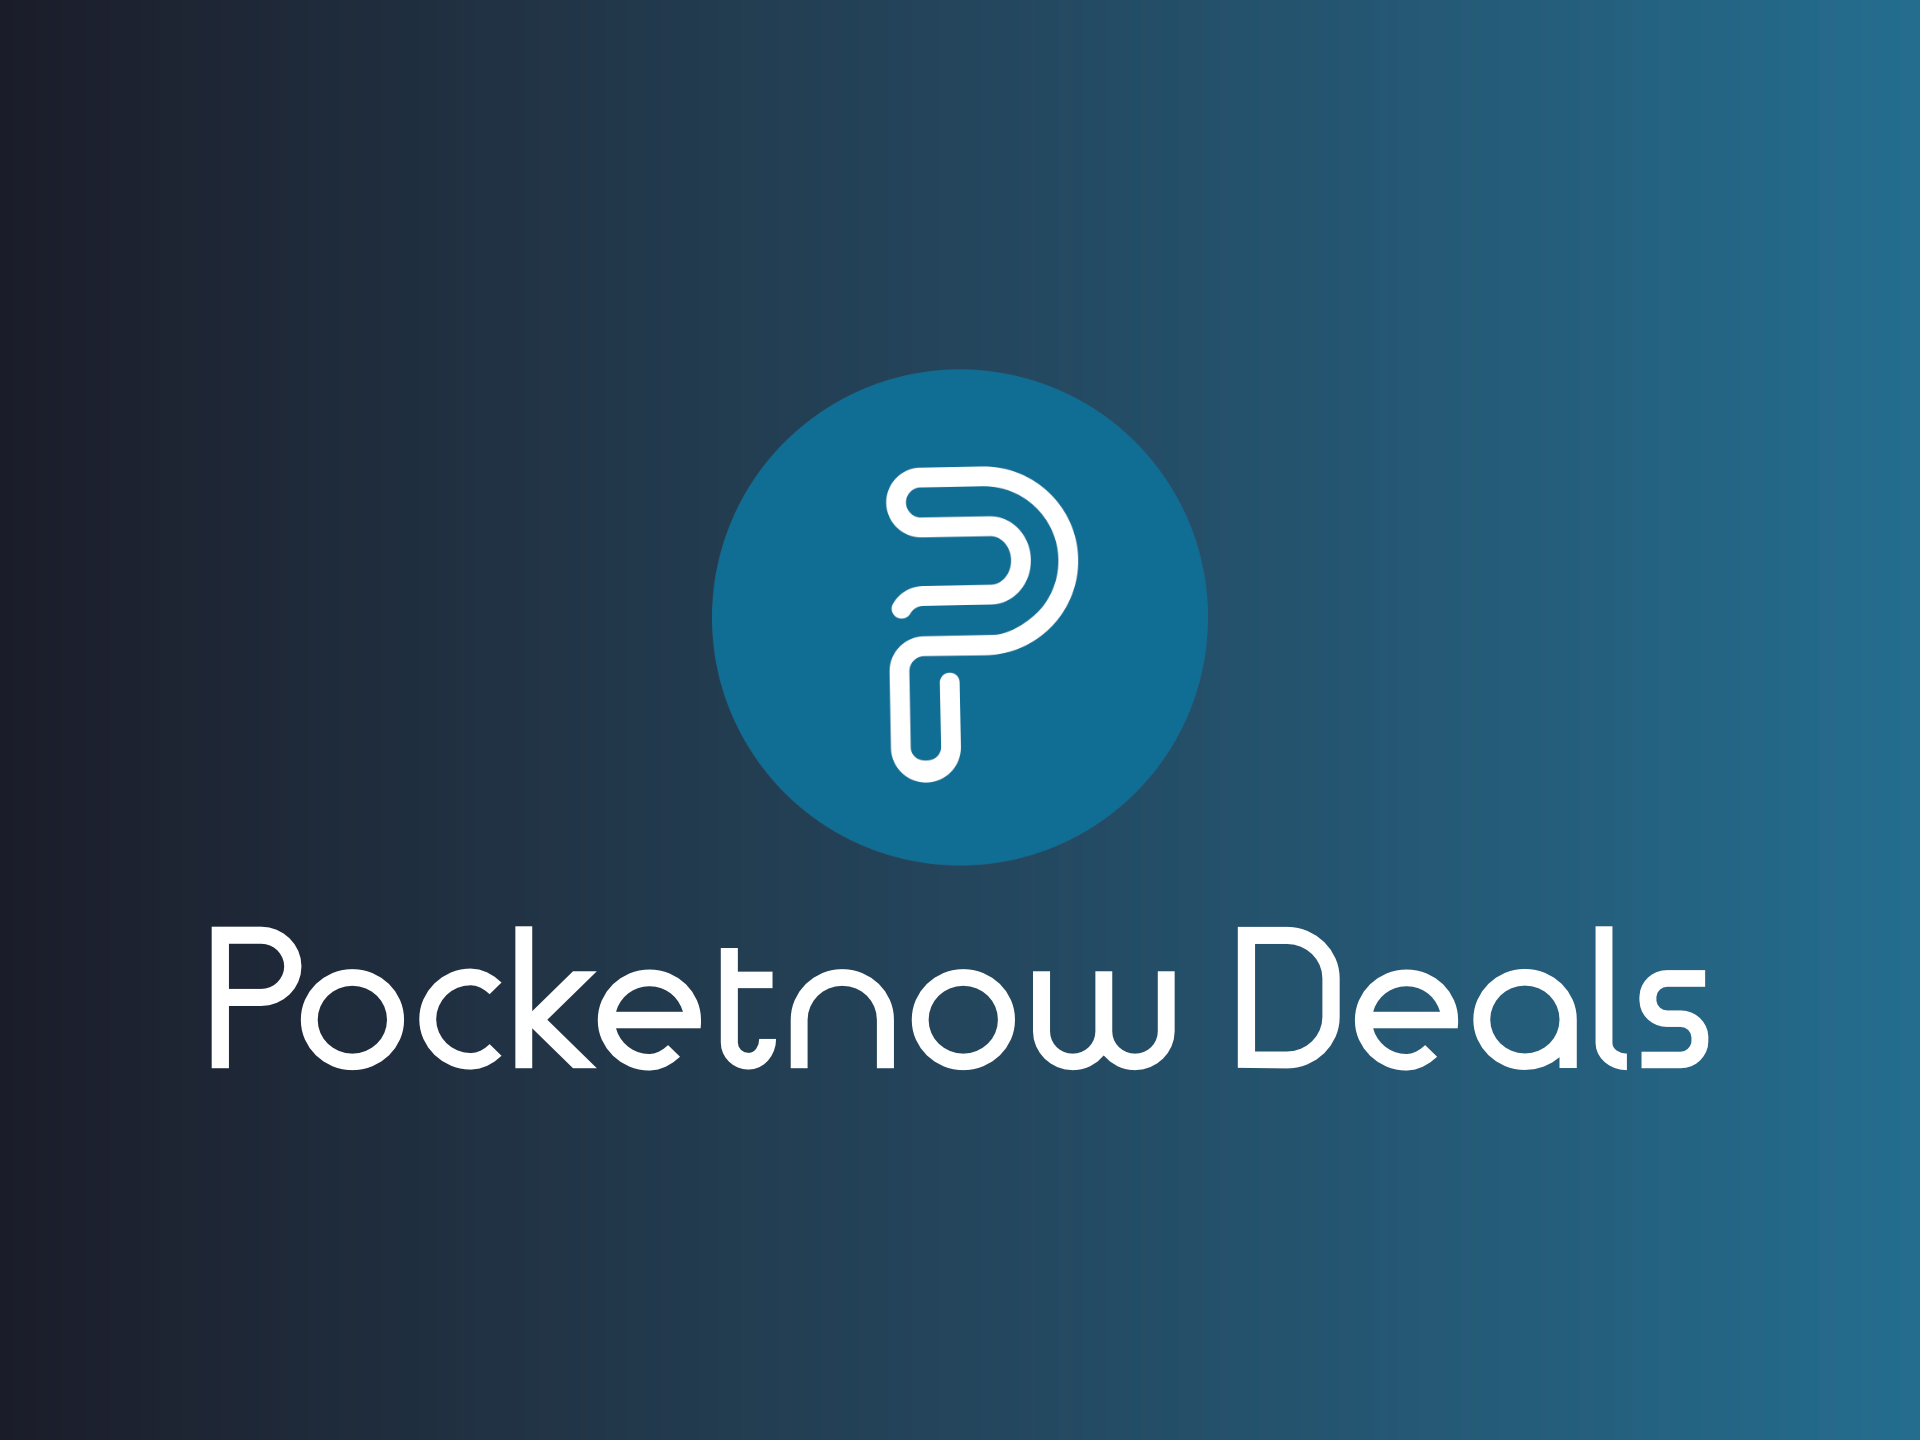 Pocketnow deals